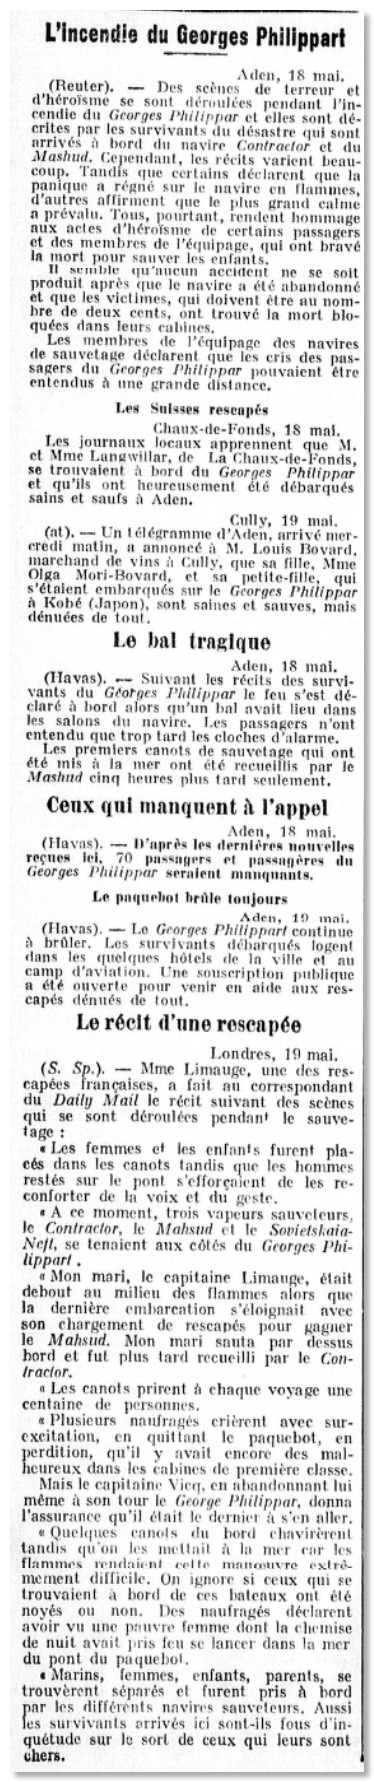 Tribune Lausanne 1932-05-19